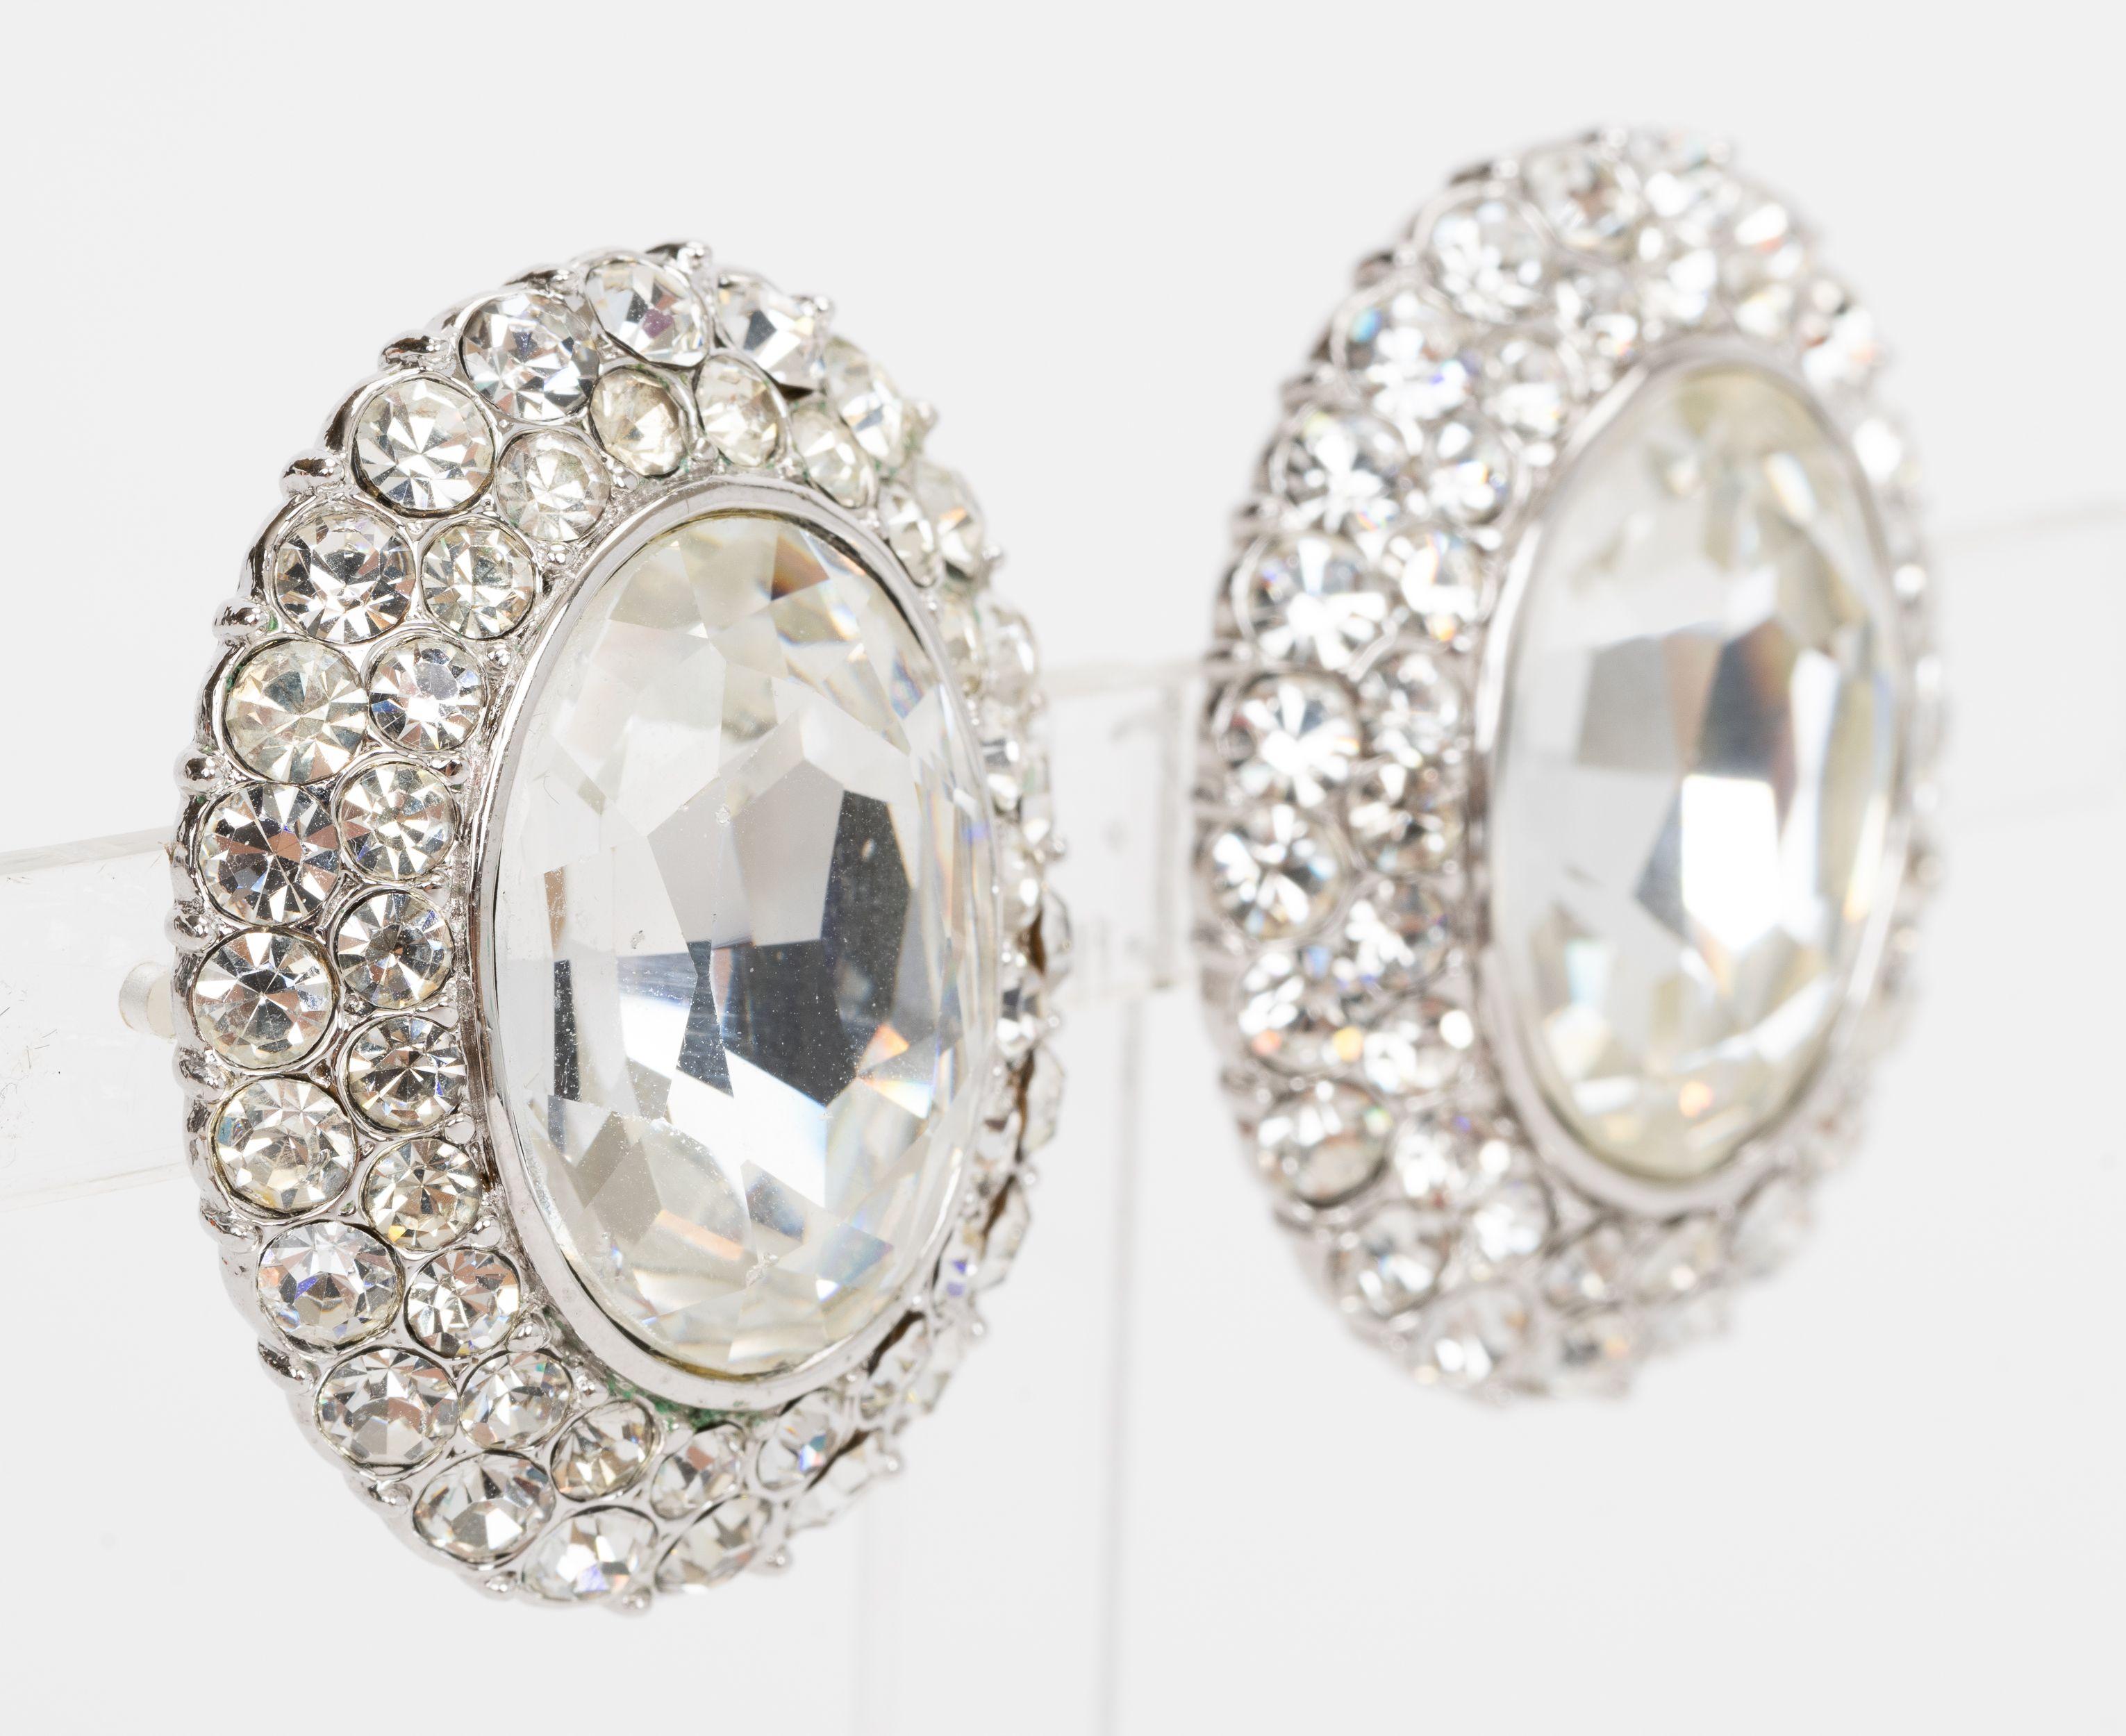 Die Yves Saint Laurent Kristall-Ohrringe haben einen Strassstein in der Mitte und runde Kristalle rundherum. Die Ohrringe lassen sich leicht anstecken. Lieferung mit Samtbeutel.